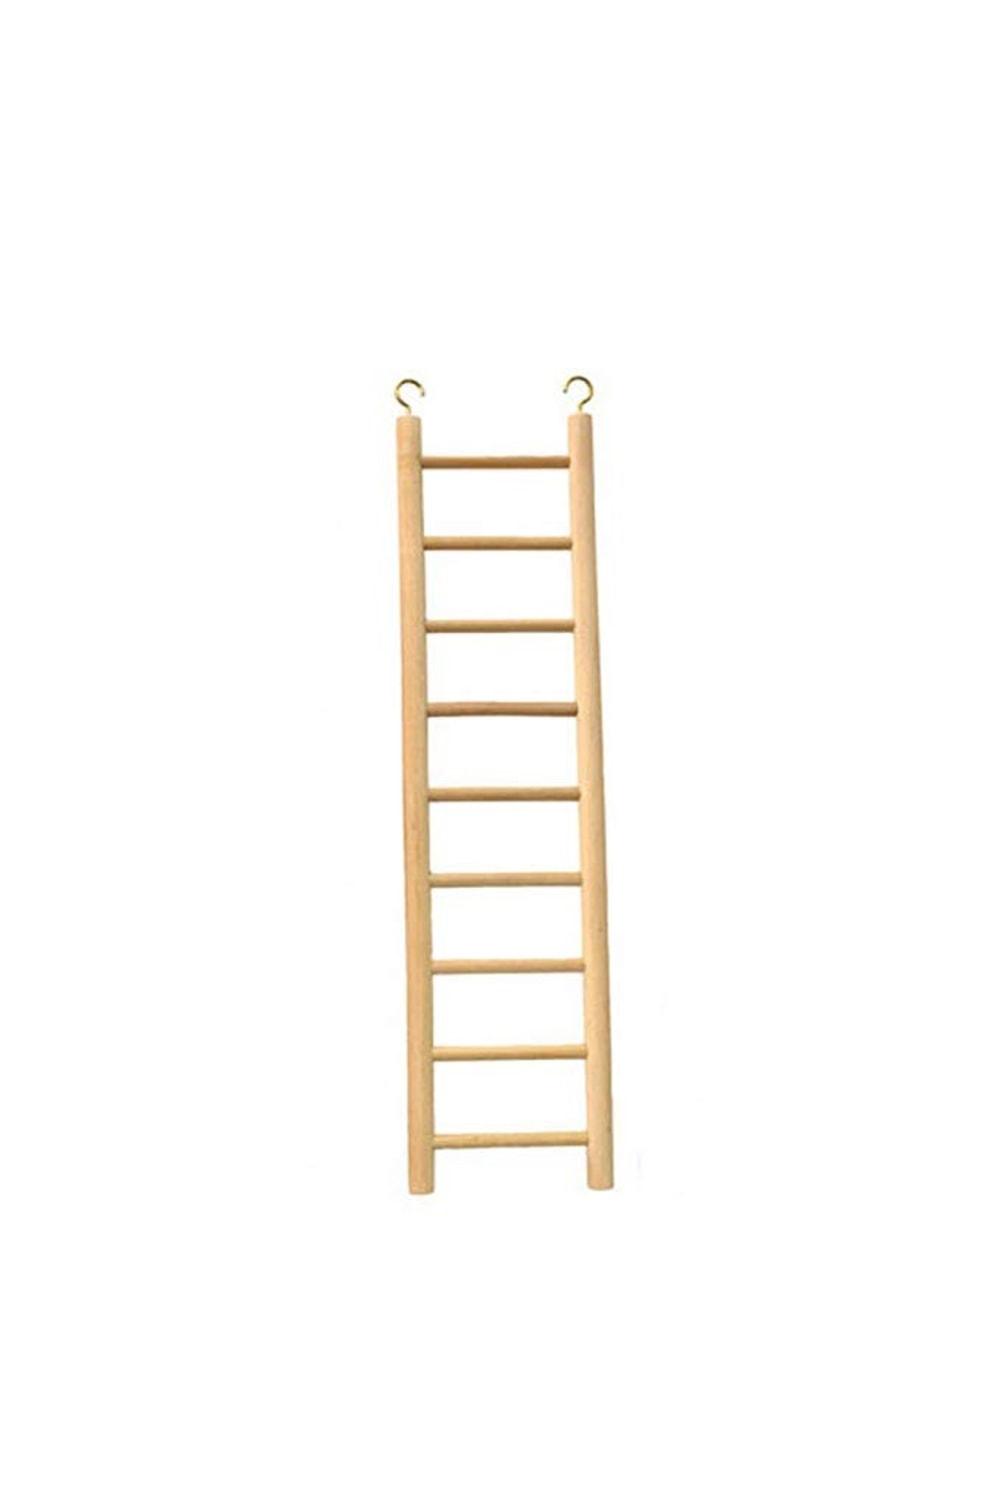 Beaks Wooden Budgie 9 Step Toy Ladder (Beige) (15 inch)